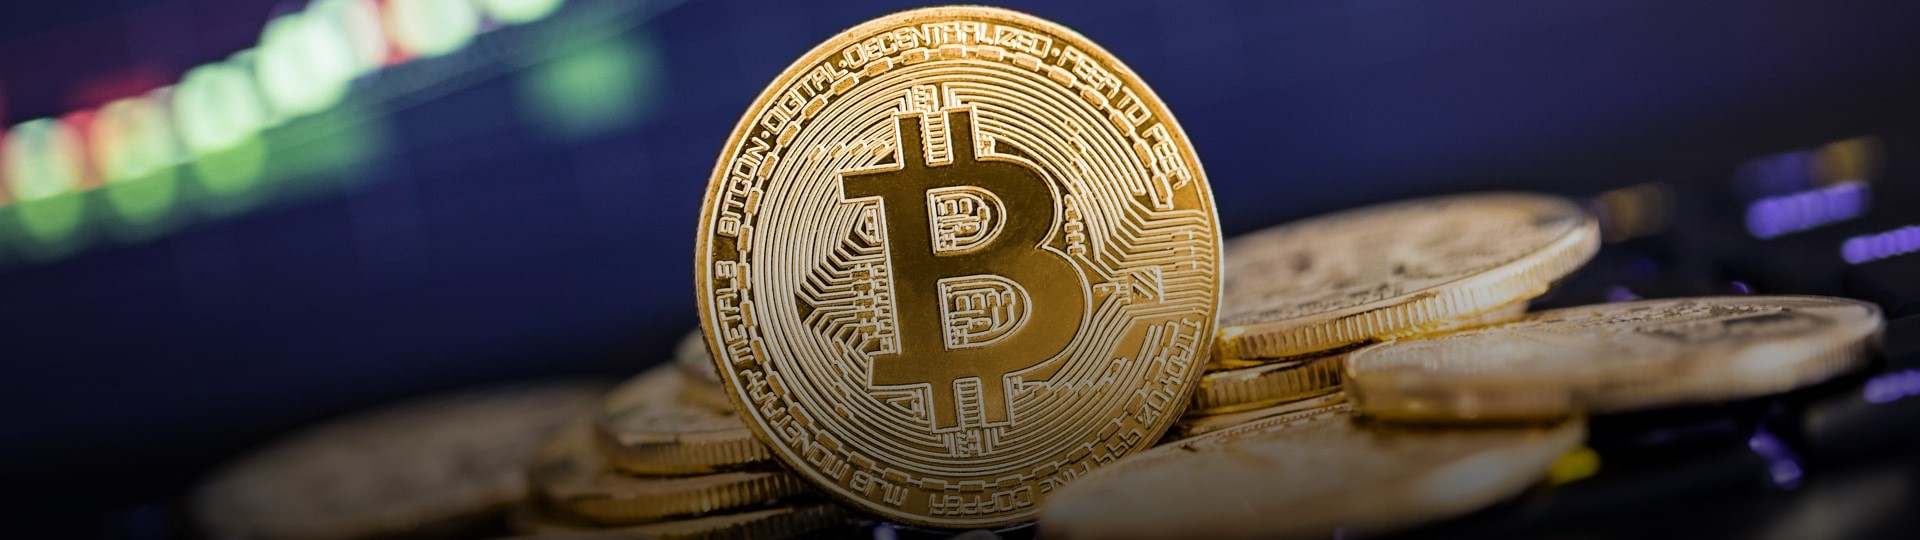 Bitcoin je na historickém maximu. Jeho příběh je neuvěřitelný